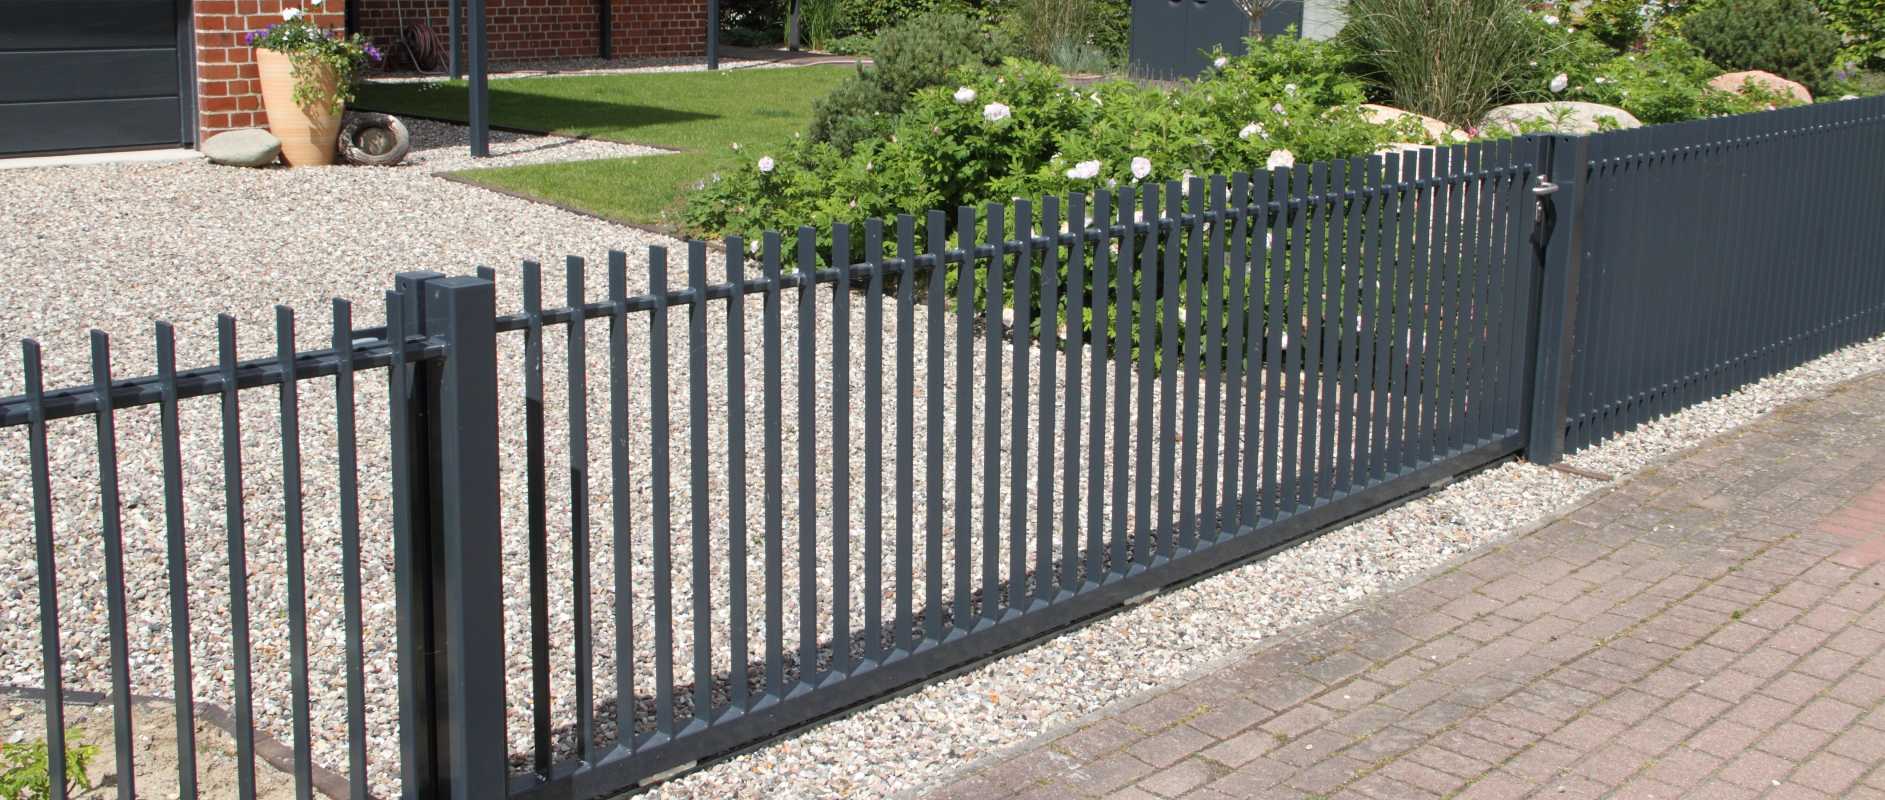 Guia para materiais de cerca: como escolher a melhor cerca para o seu quintal